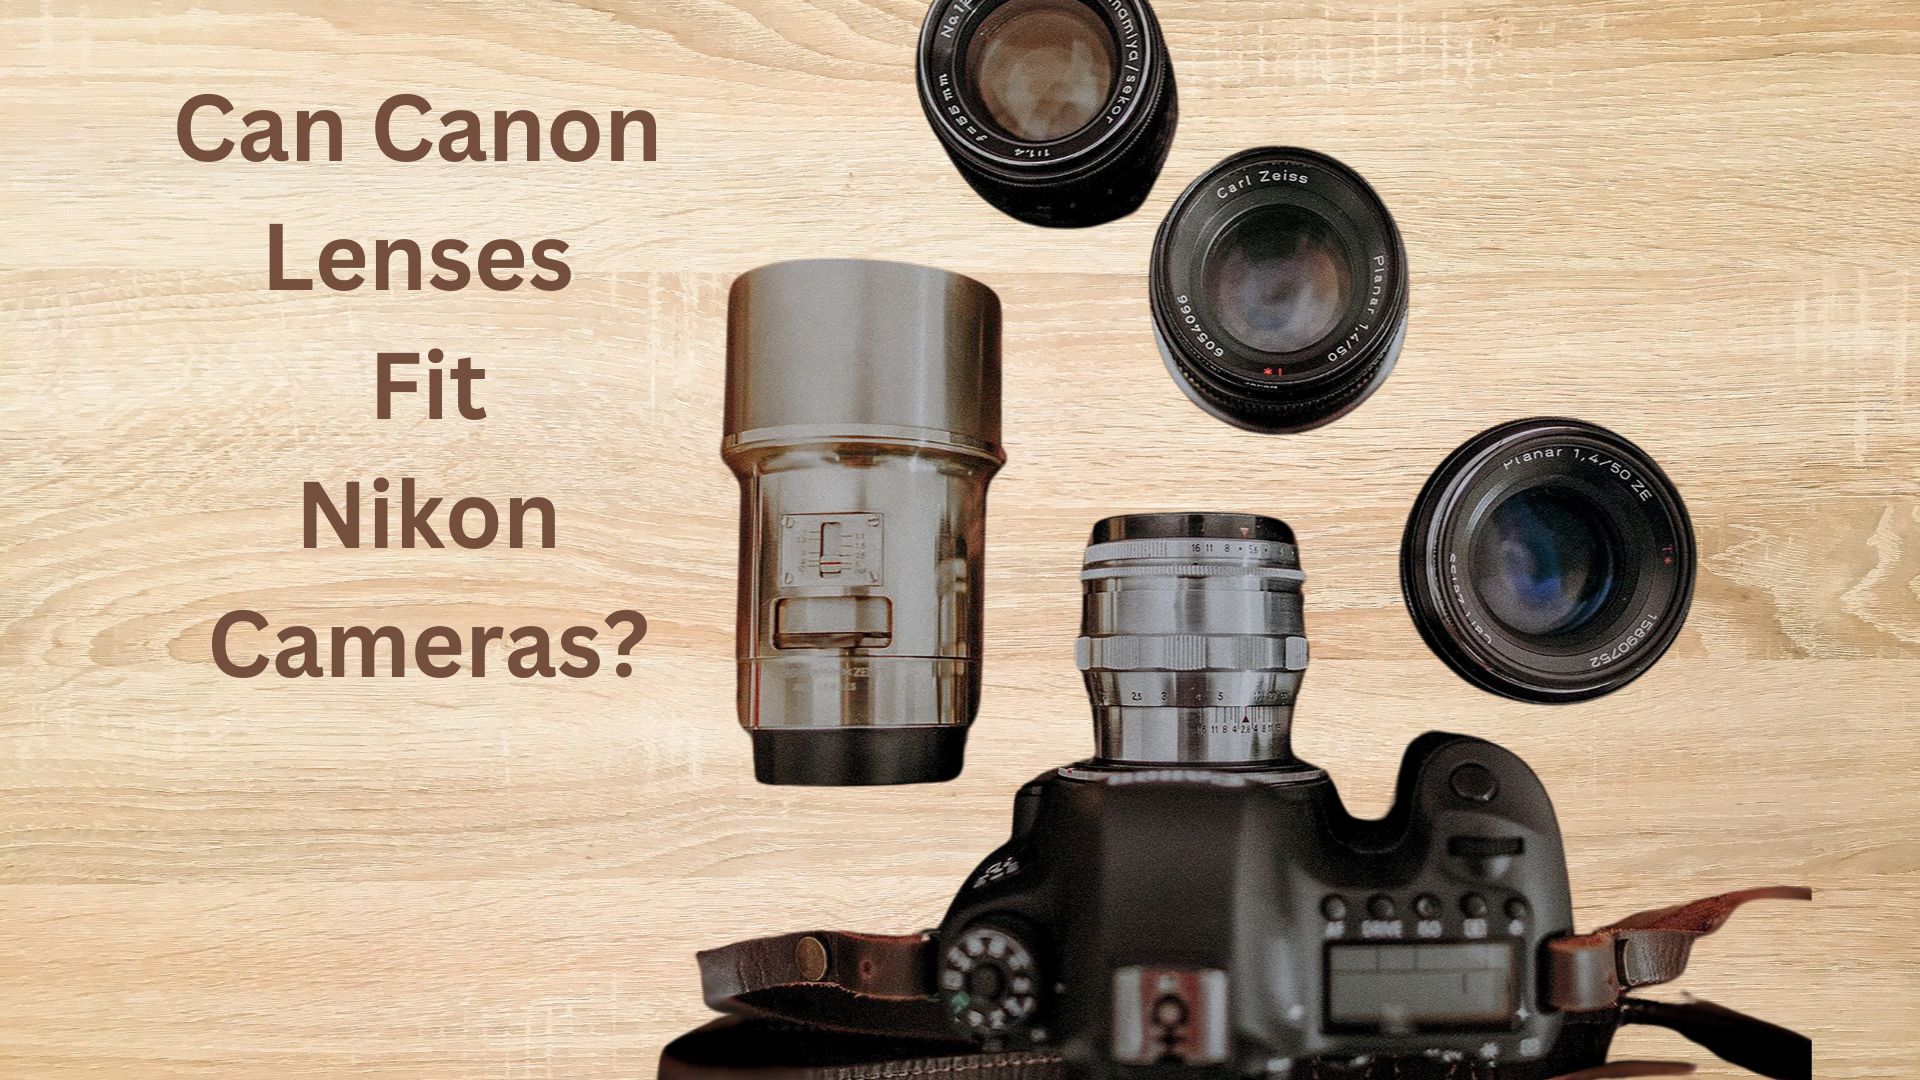 Can Canon Lenses Fit Nikon cameras